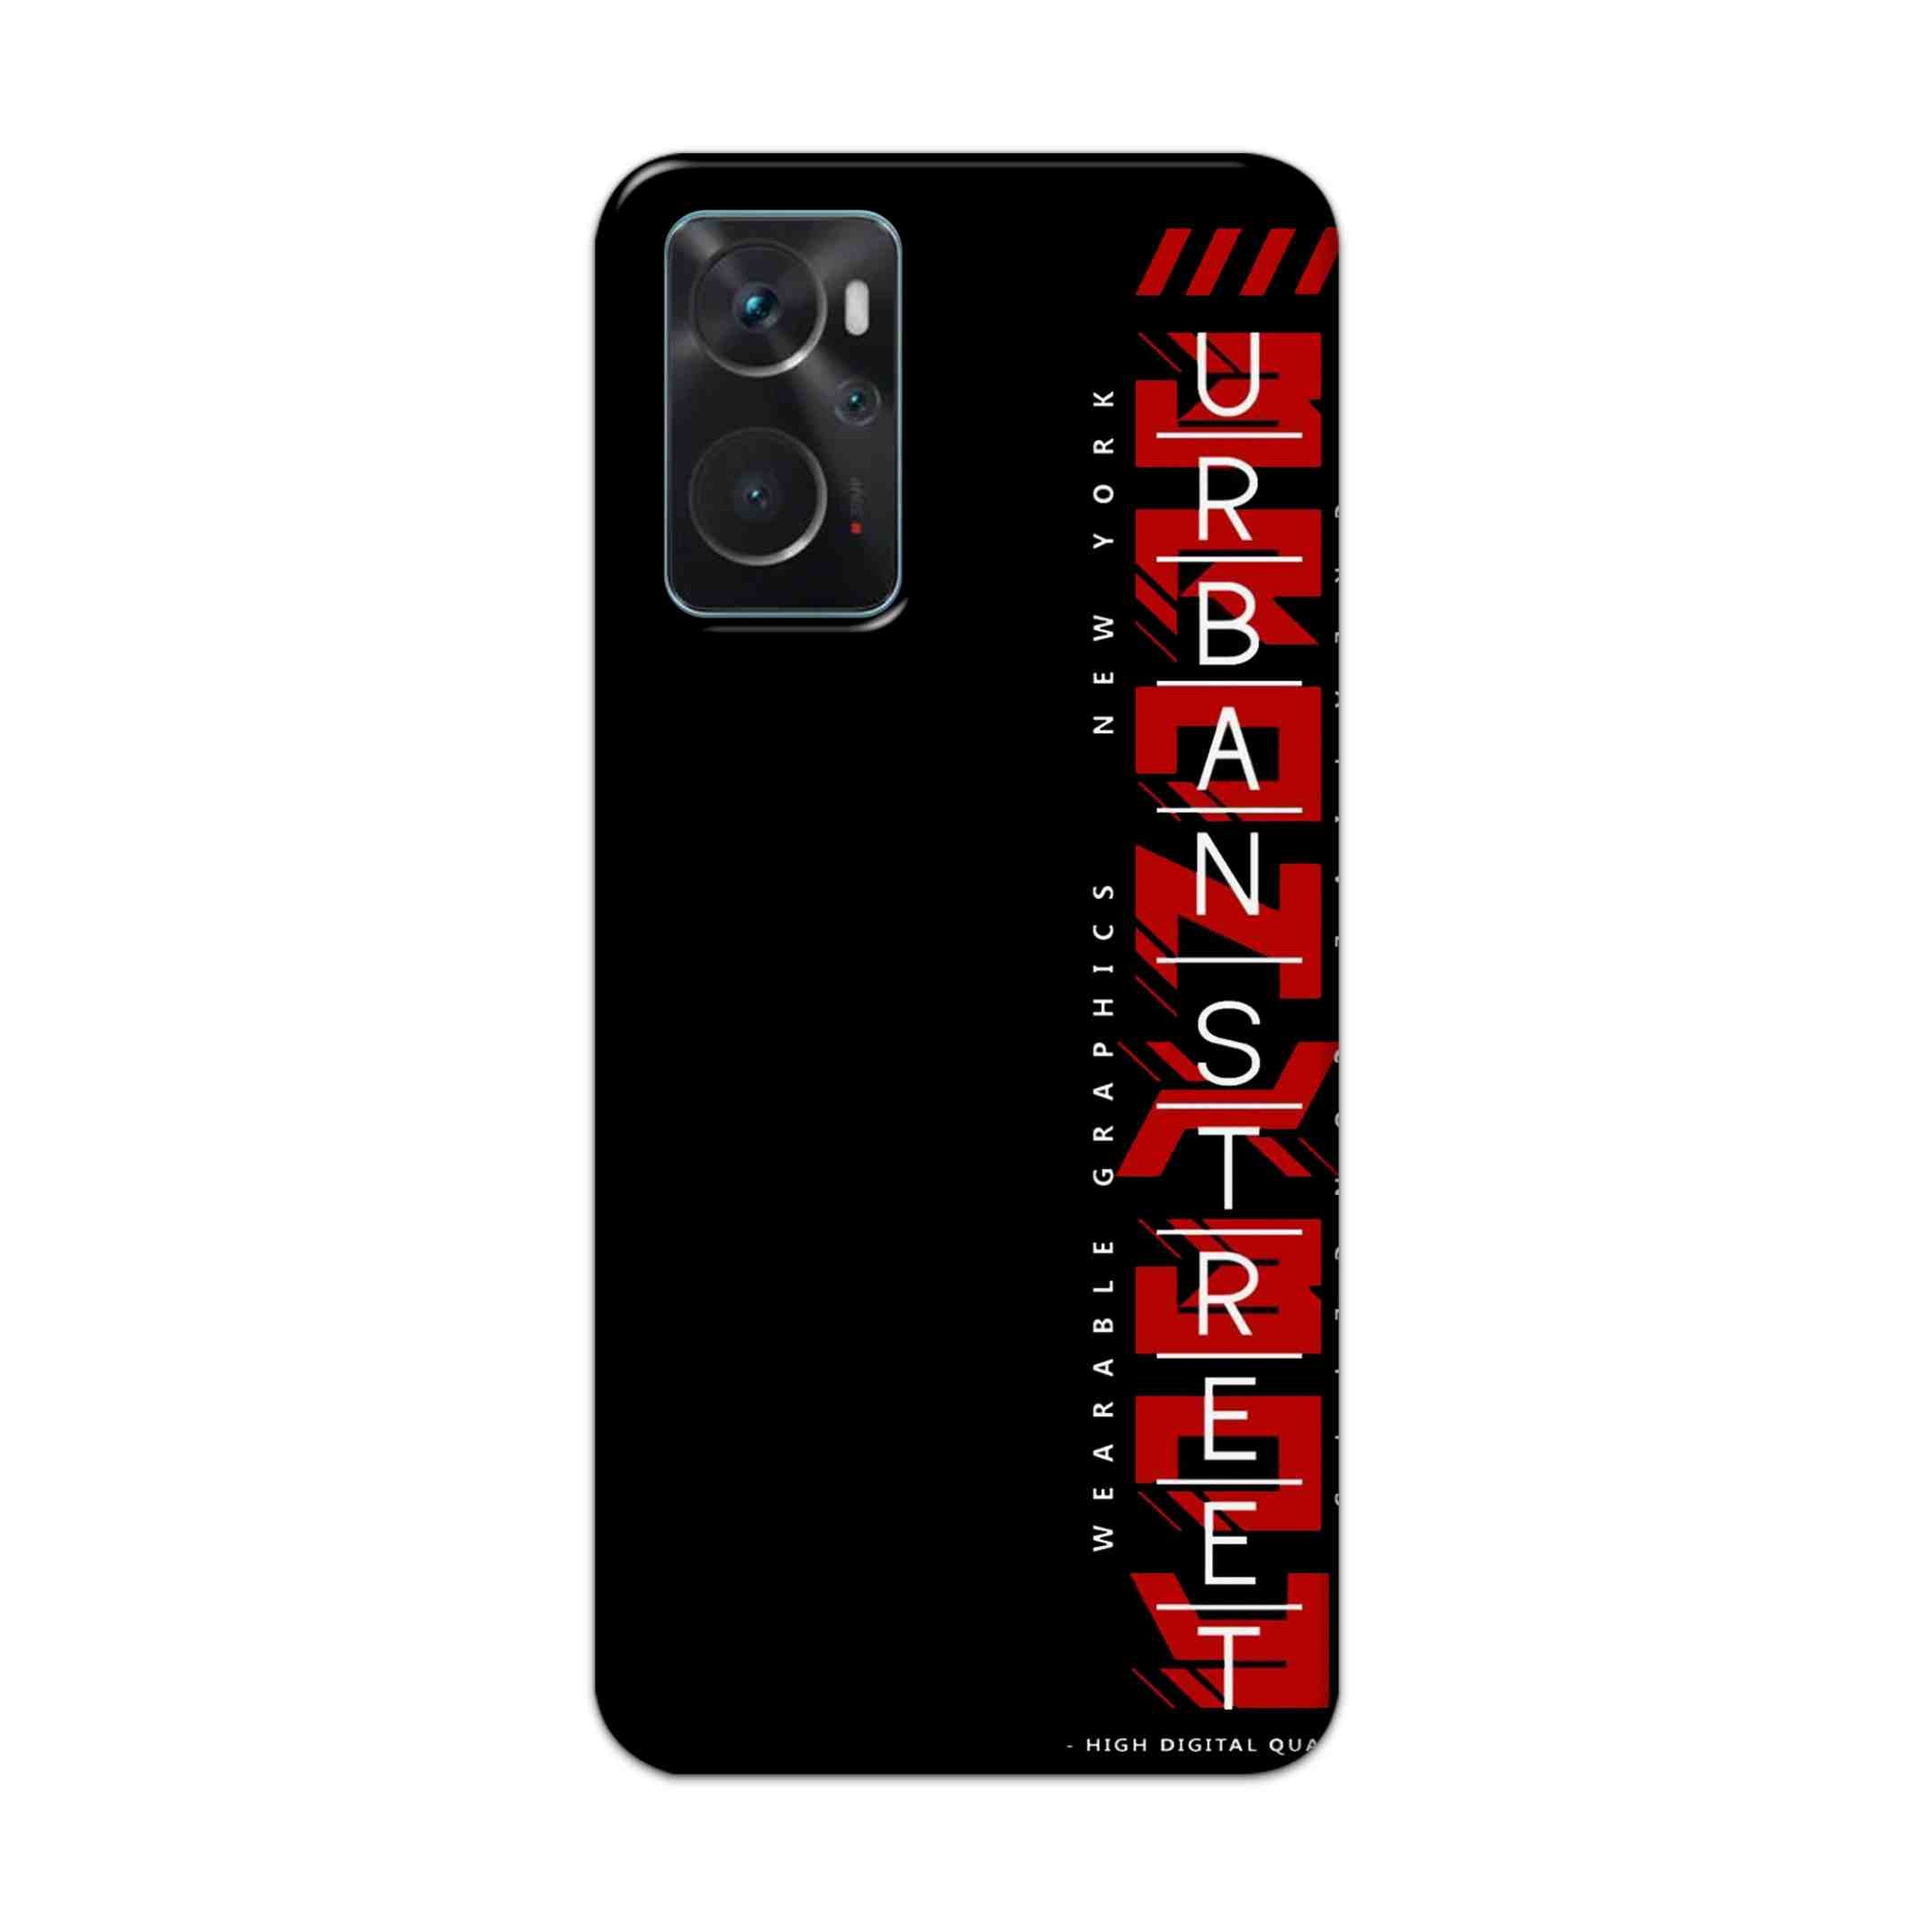 Buy Urban Street Hard Back Mobile Phone Case Cover For Oppo K10 Online